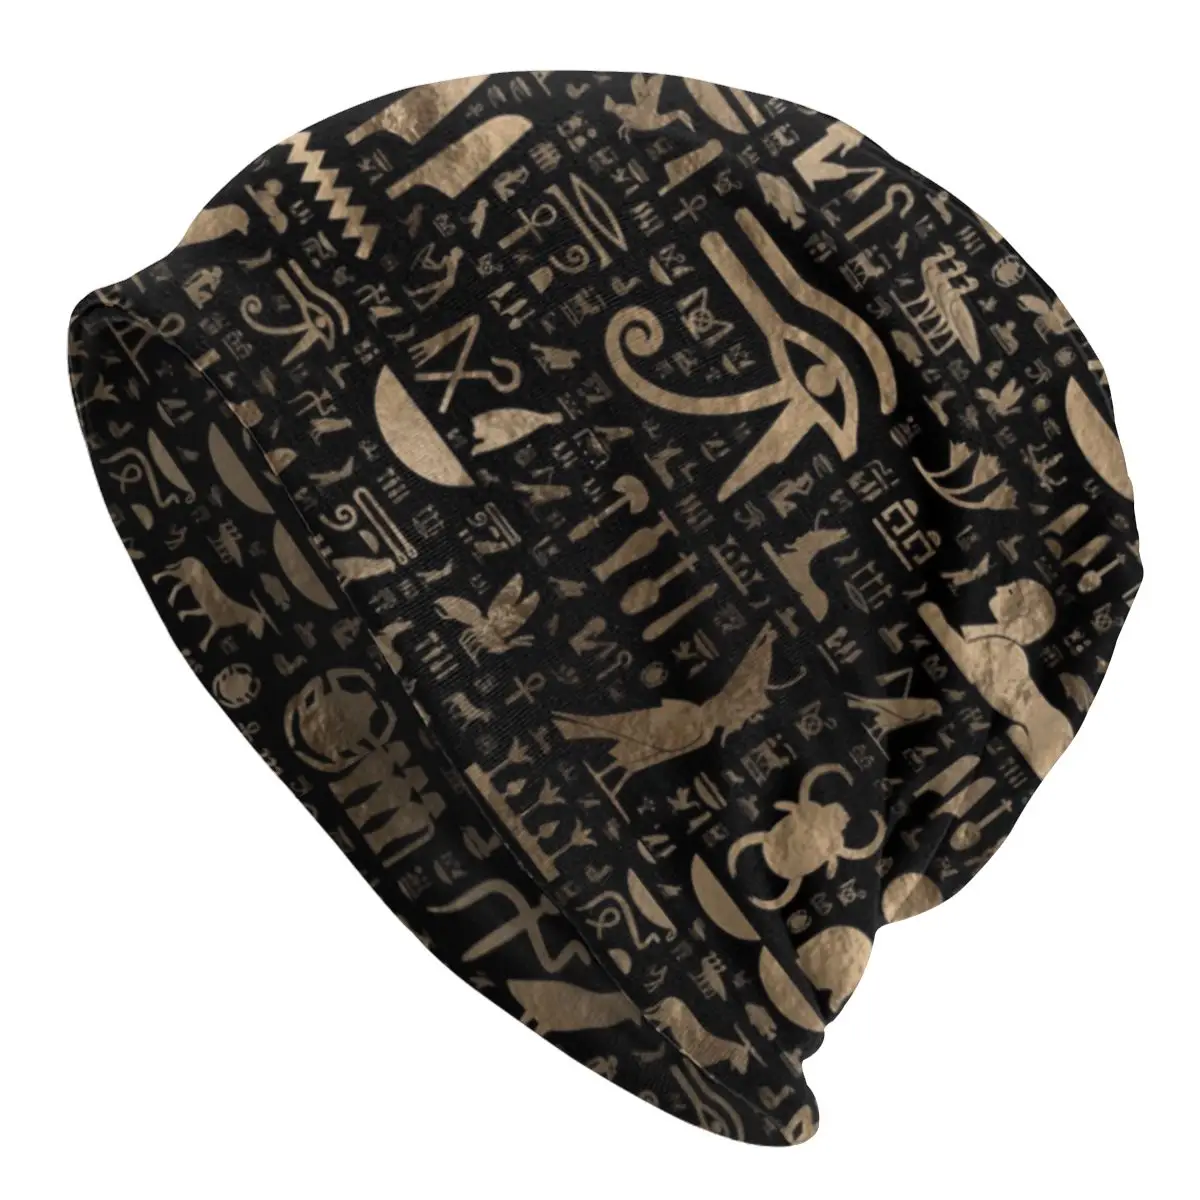 

Шапка-бини в стиле древнего египетского иероглифа, шапки, шапка, зимняя теплая вязаная шапка для мужчин и женщин, взрослые шапки-бини из Египта, лыжная шапка для улицы